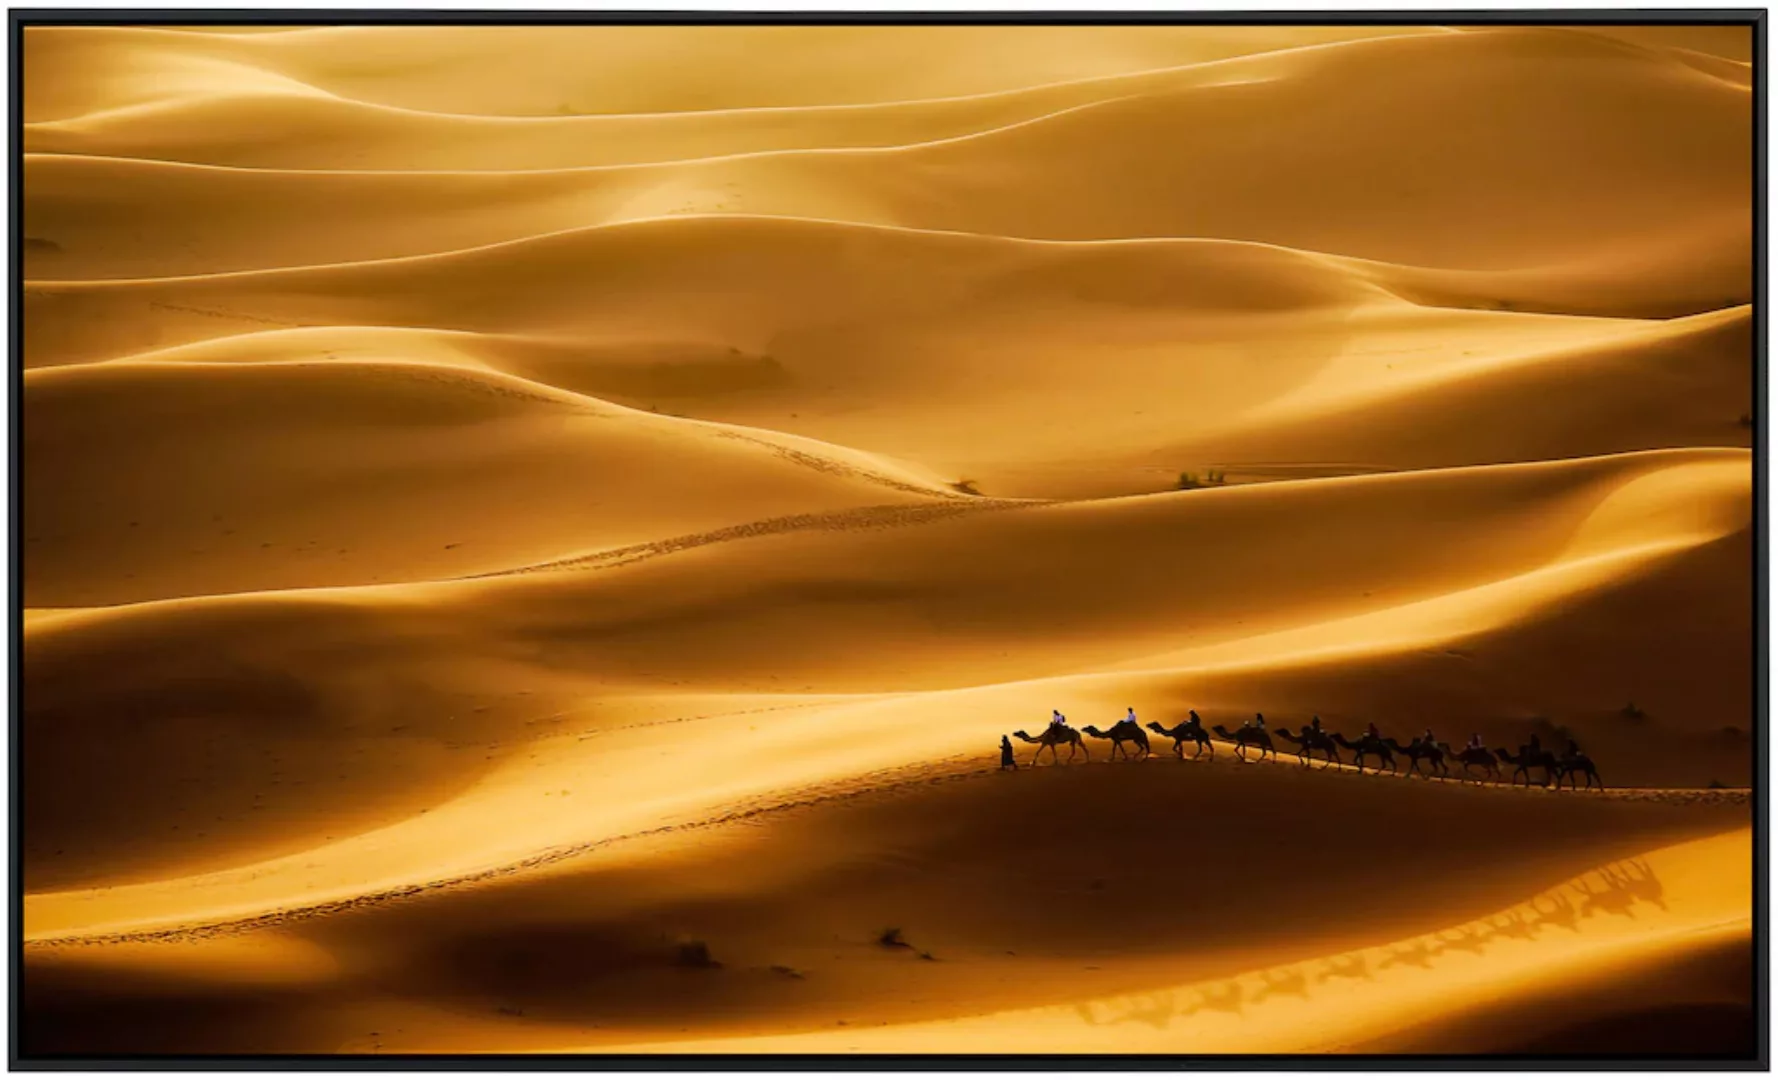 Papermoon Infrarotheizung »Wüste« günstig online kaufen